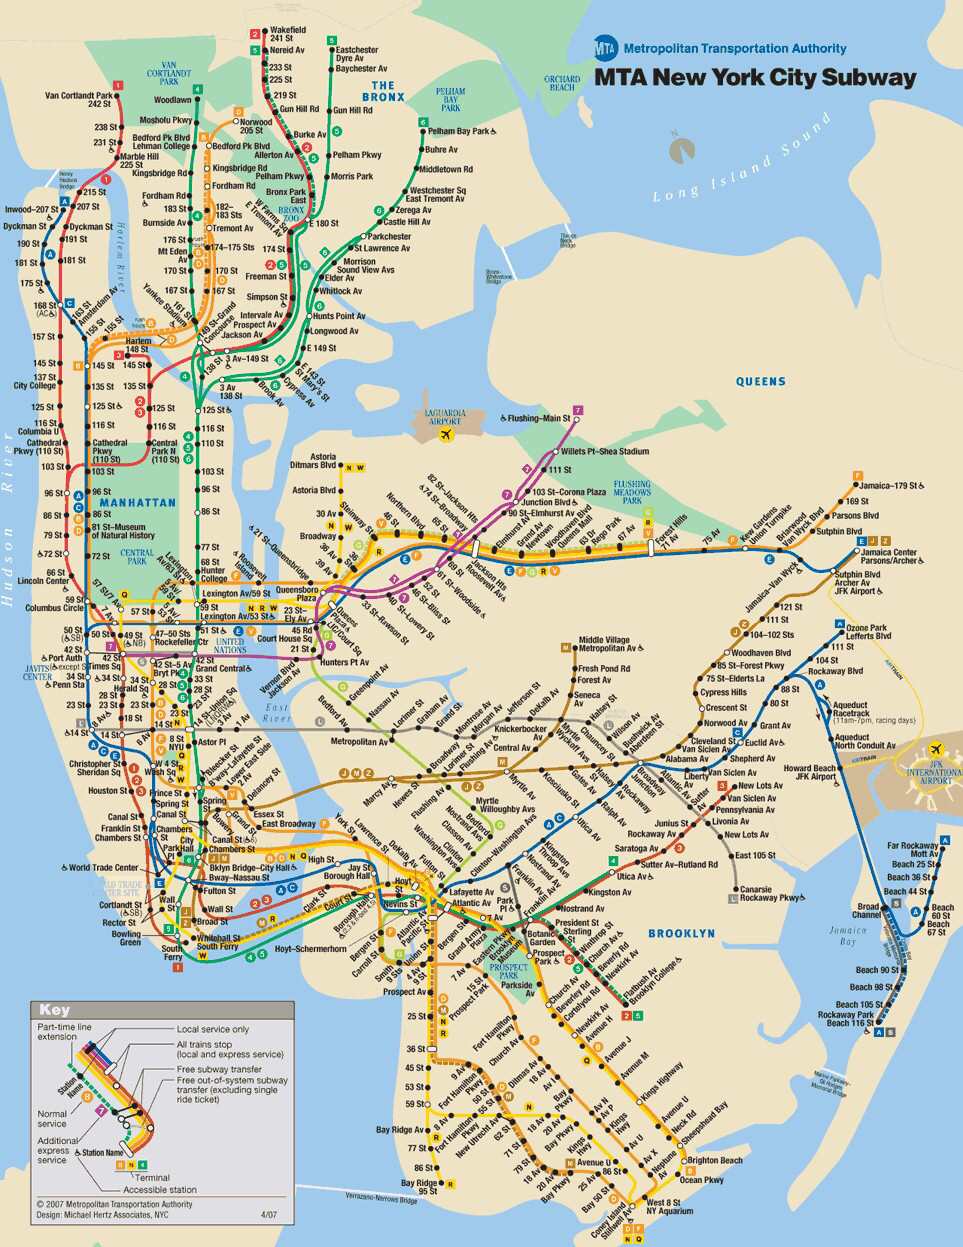 求各位达人纽约地铁路线图